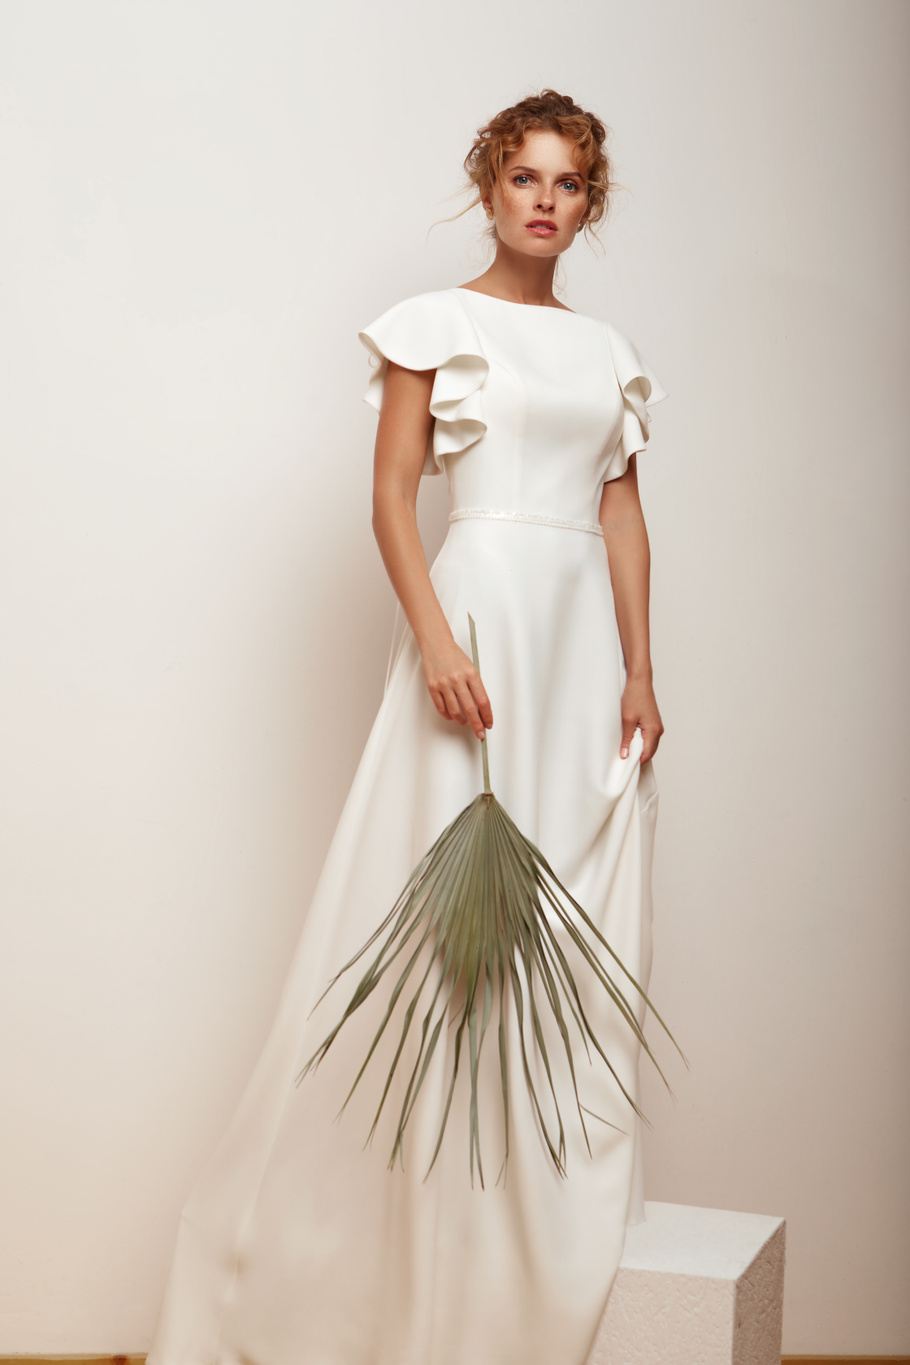 Купить свадебное платье «Ситлин» Мэрри Марк из коллекции 2020 года в Воронеже